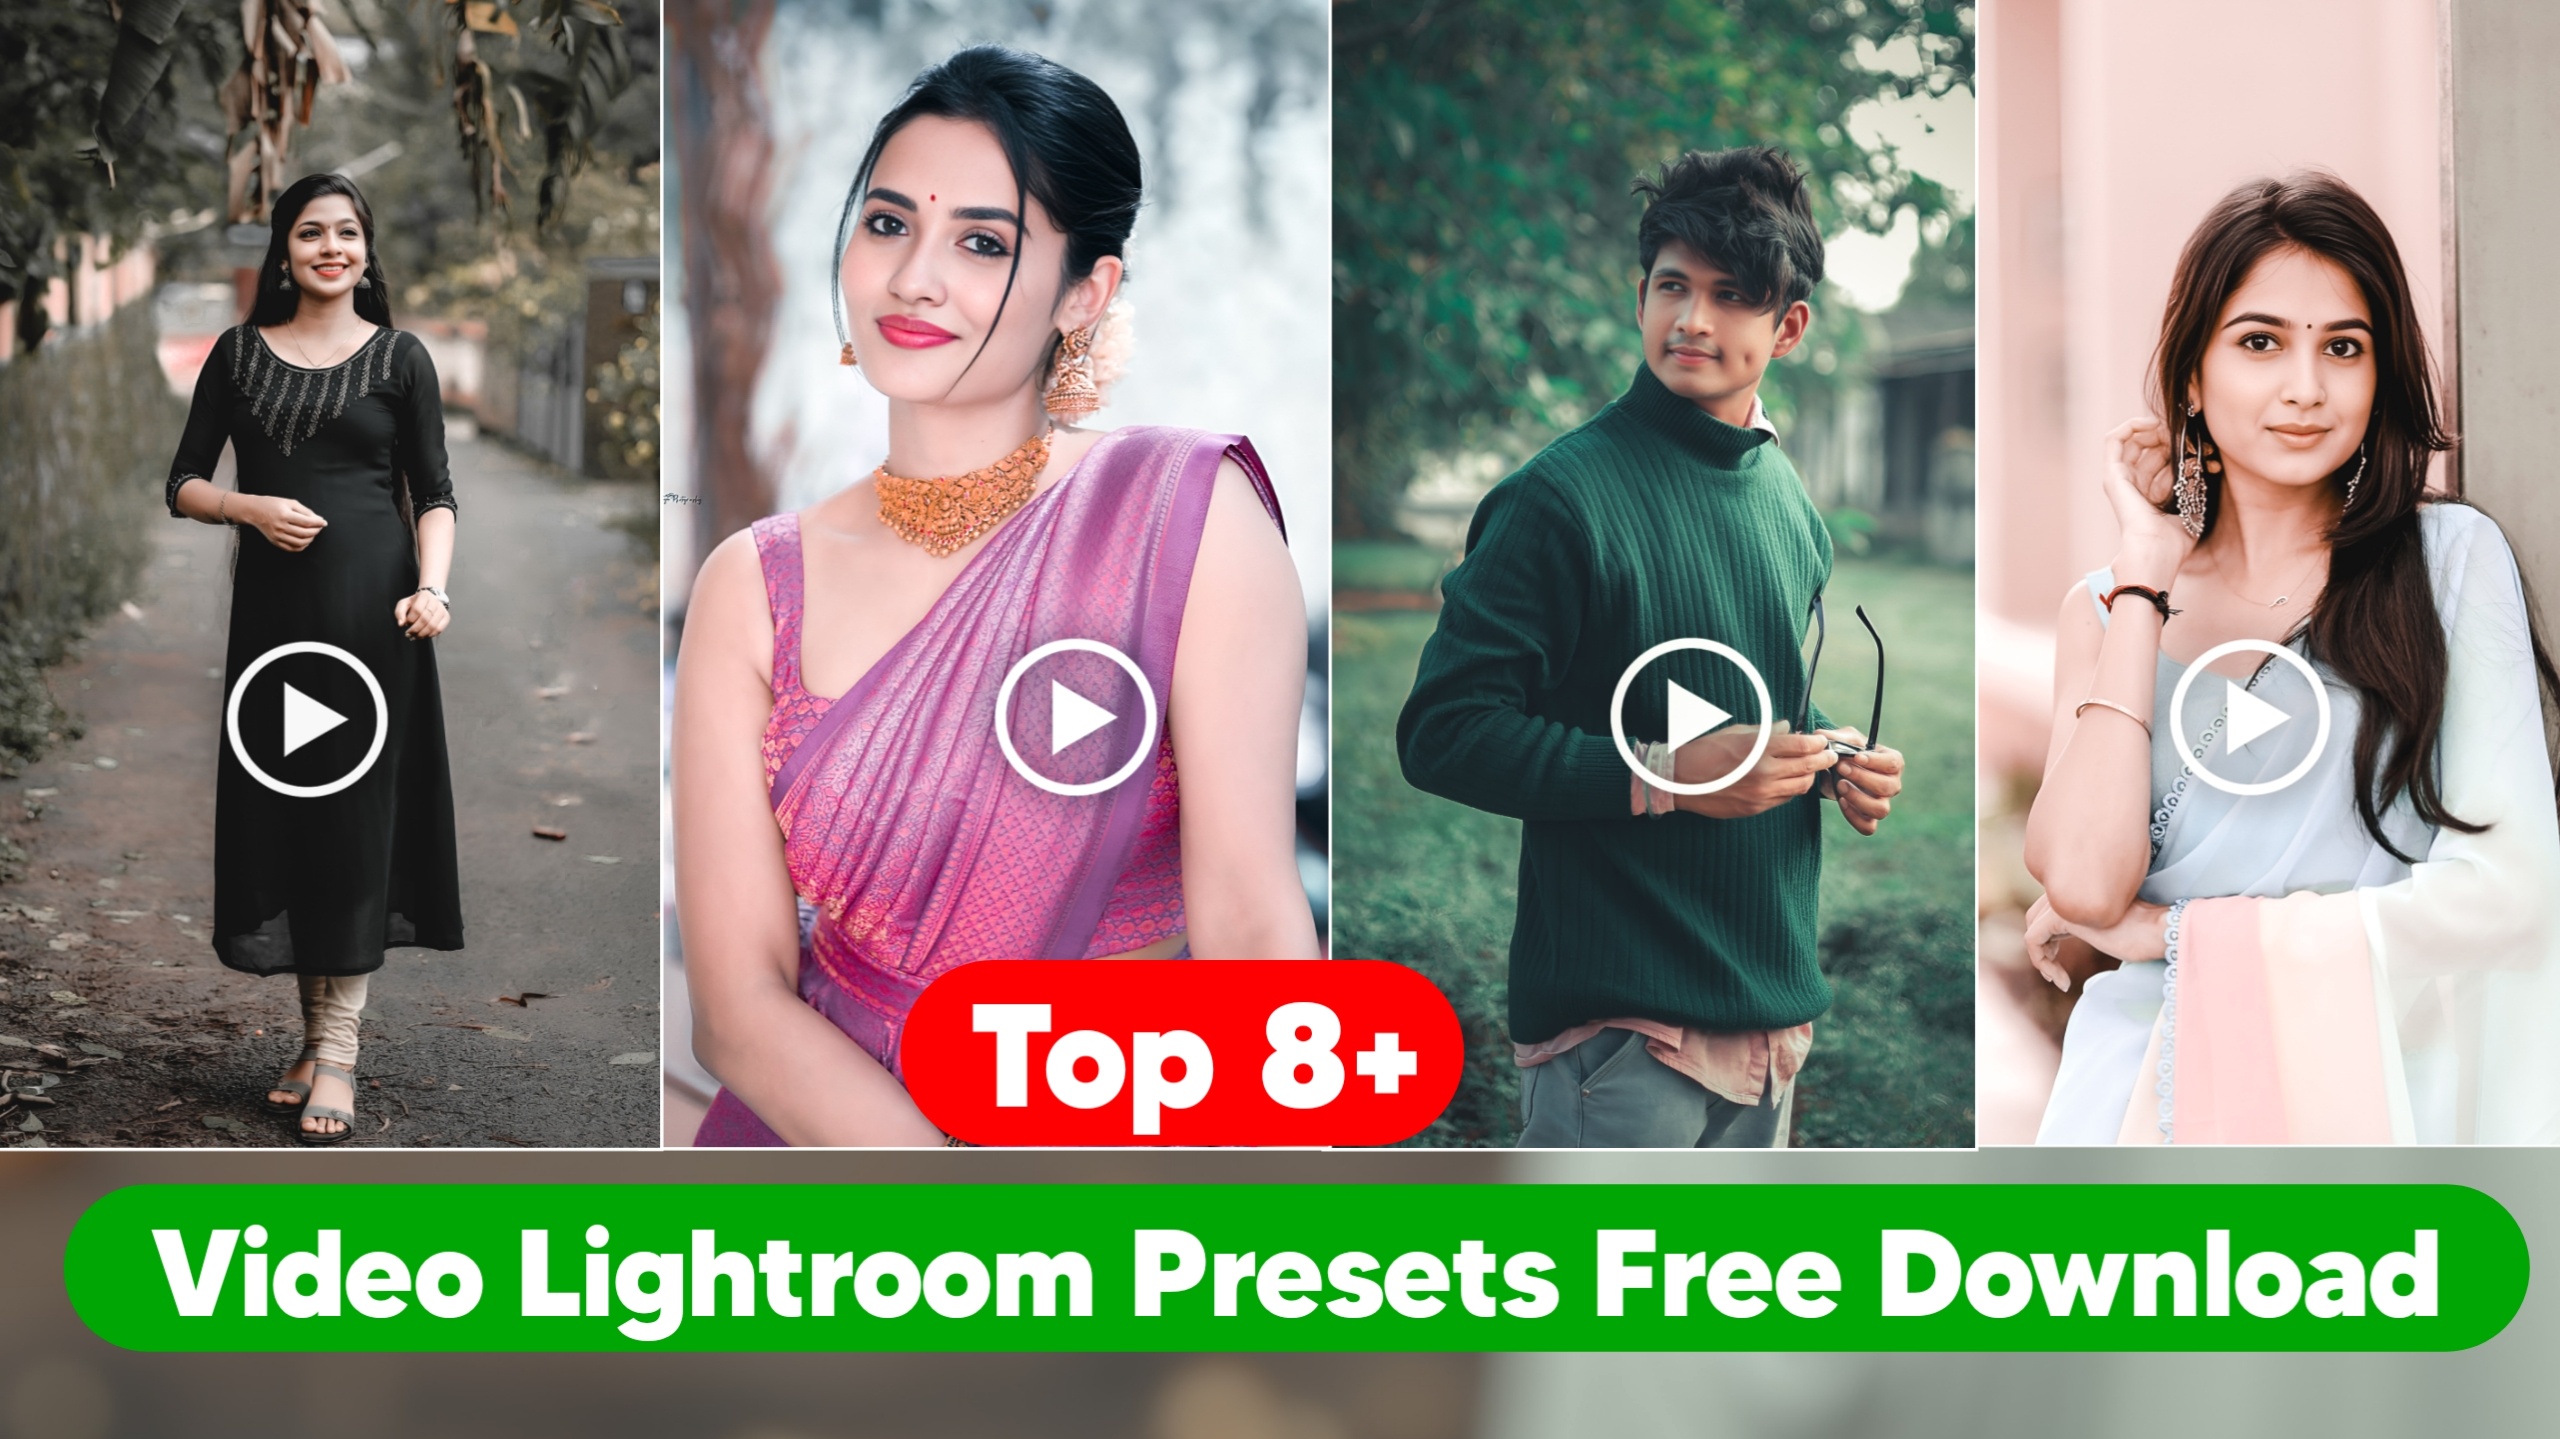 Top 8+ Video Lightroom Presets